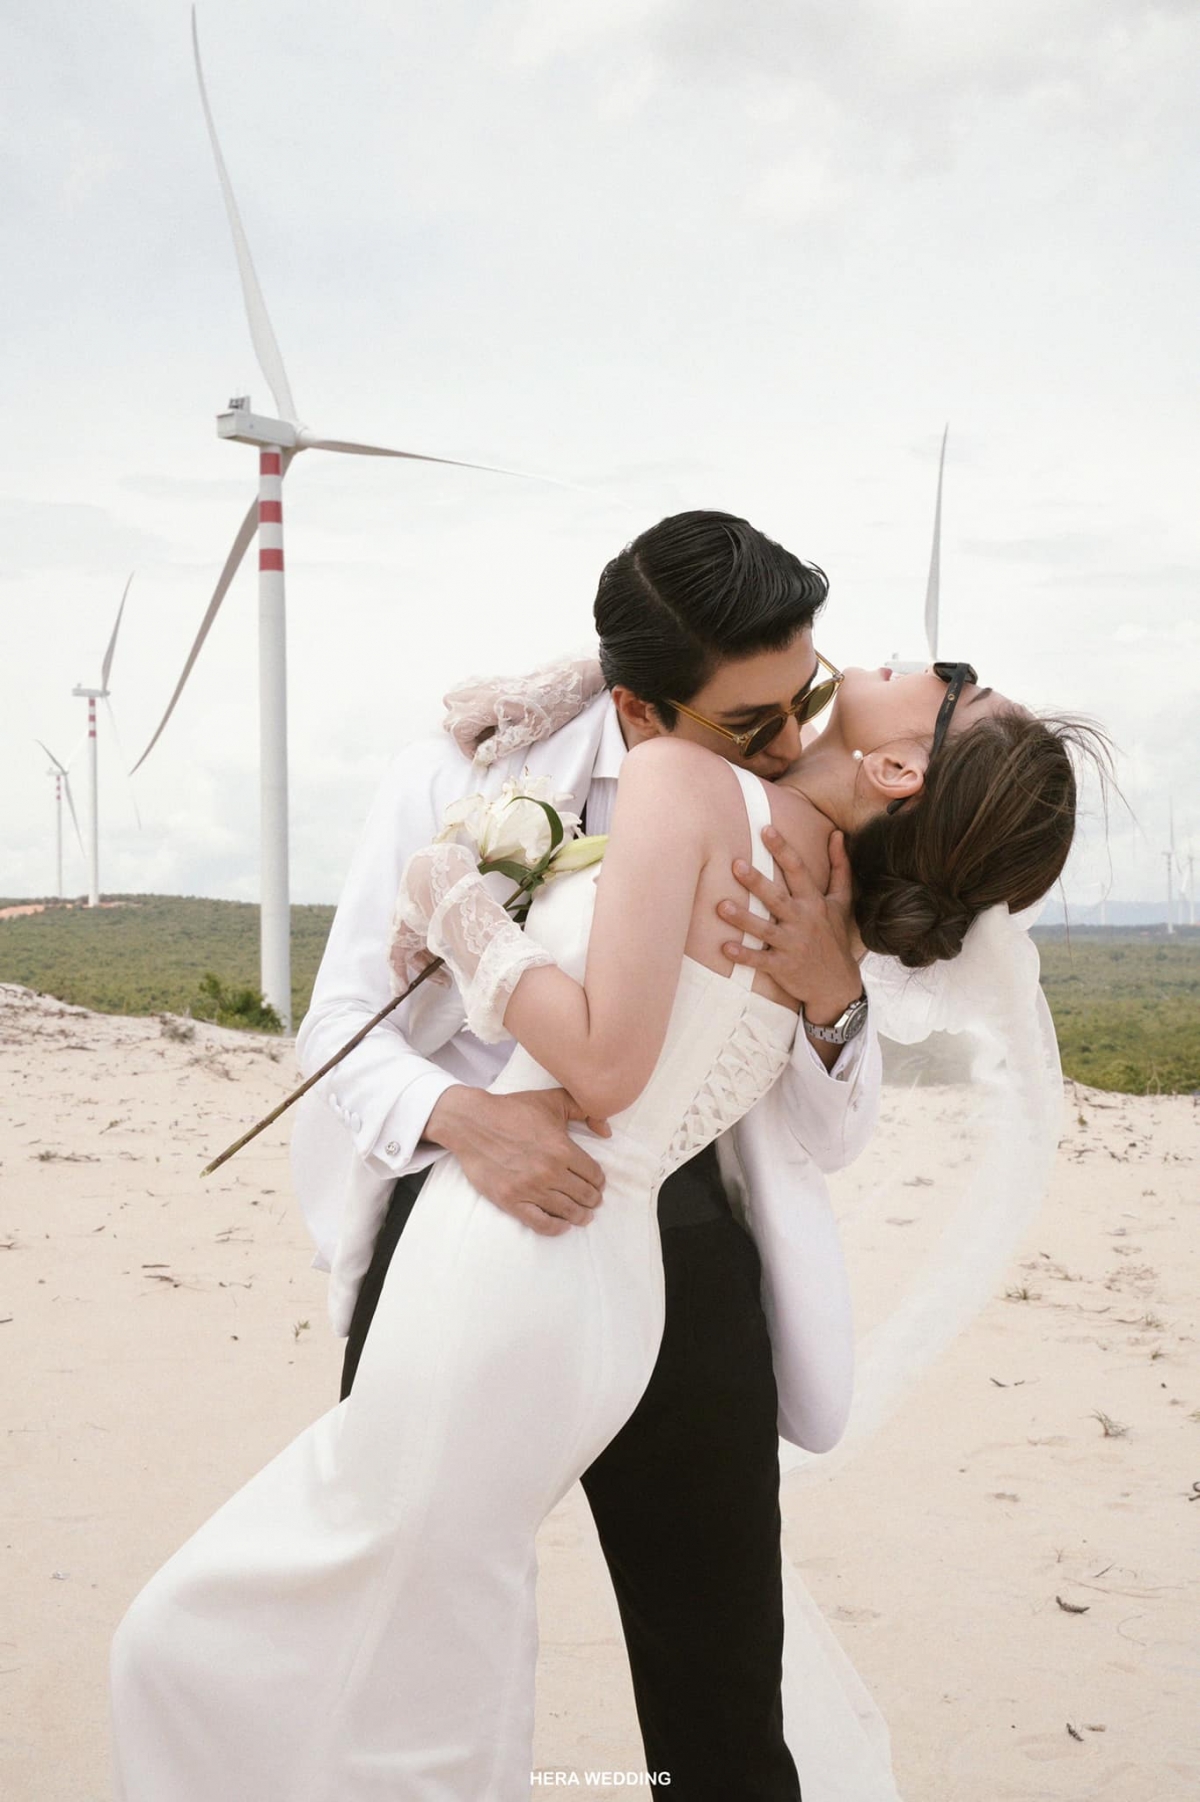 Bình An – Phương Nga tung loạt ảnh cưới ‘tình bể tình’ giữa đồi cát trắng